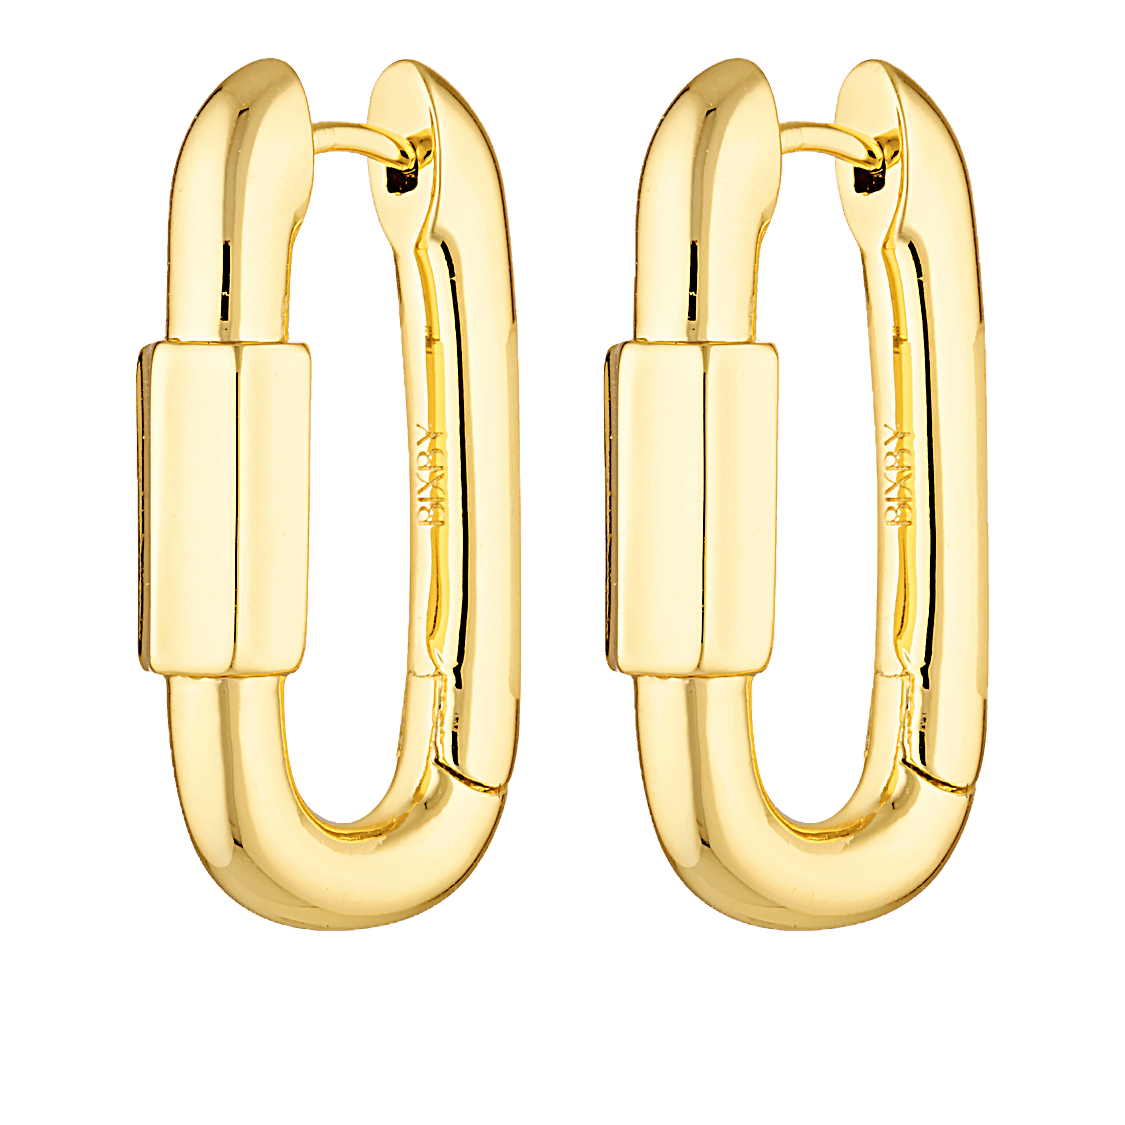 Carabiner inspired earrings 